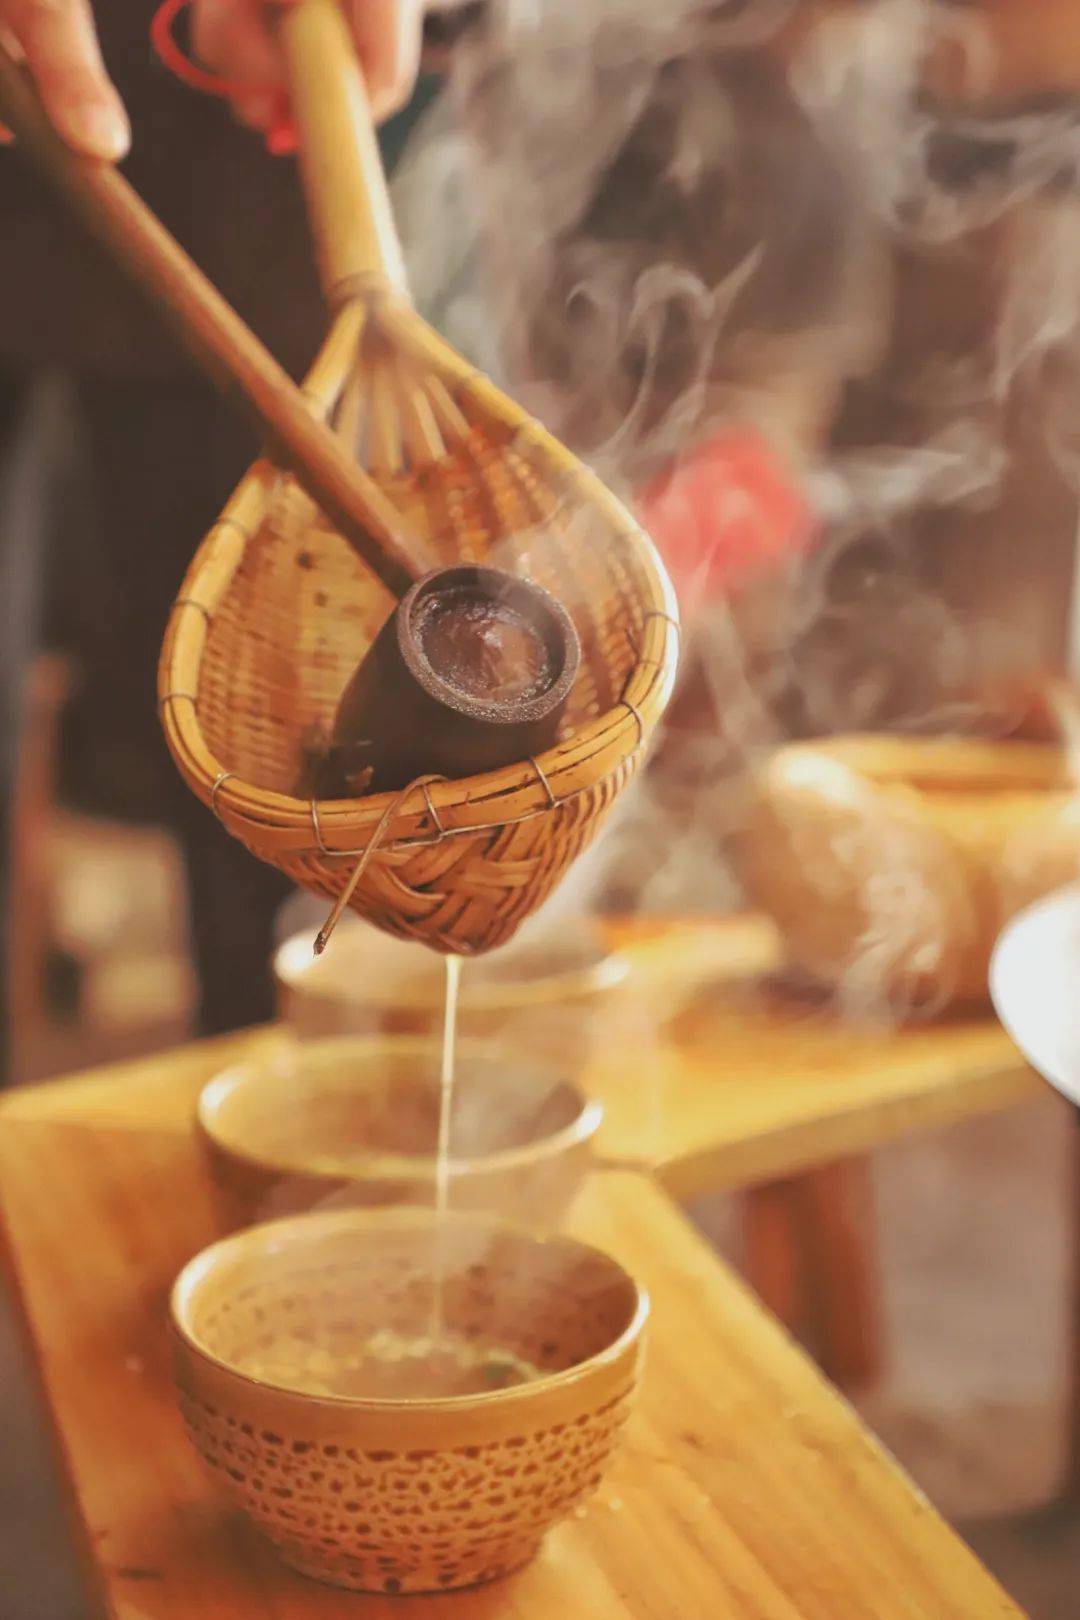 除了原料上和清茶有所差别,制作油茶的方式也很有特色,俗称"打油茶".